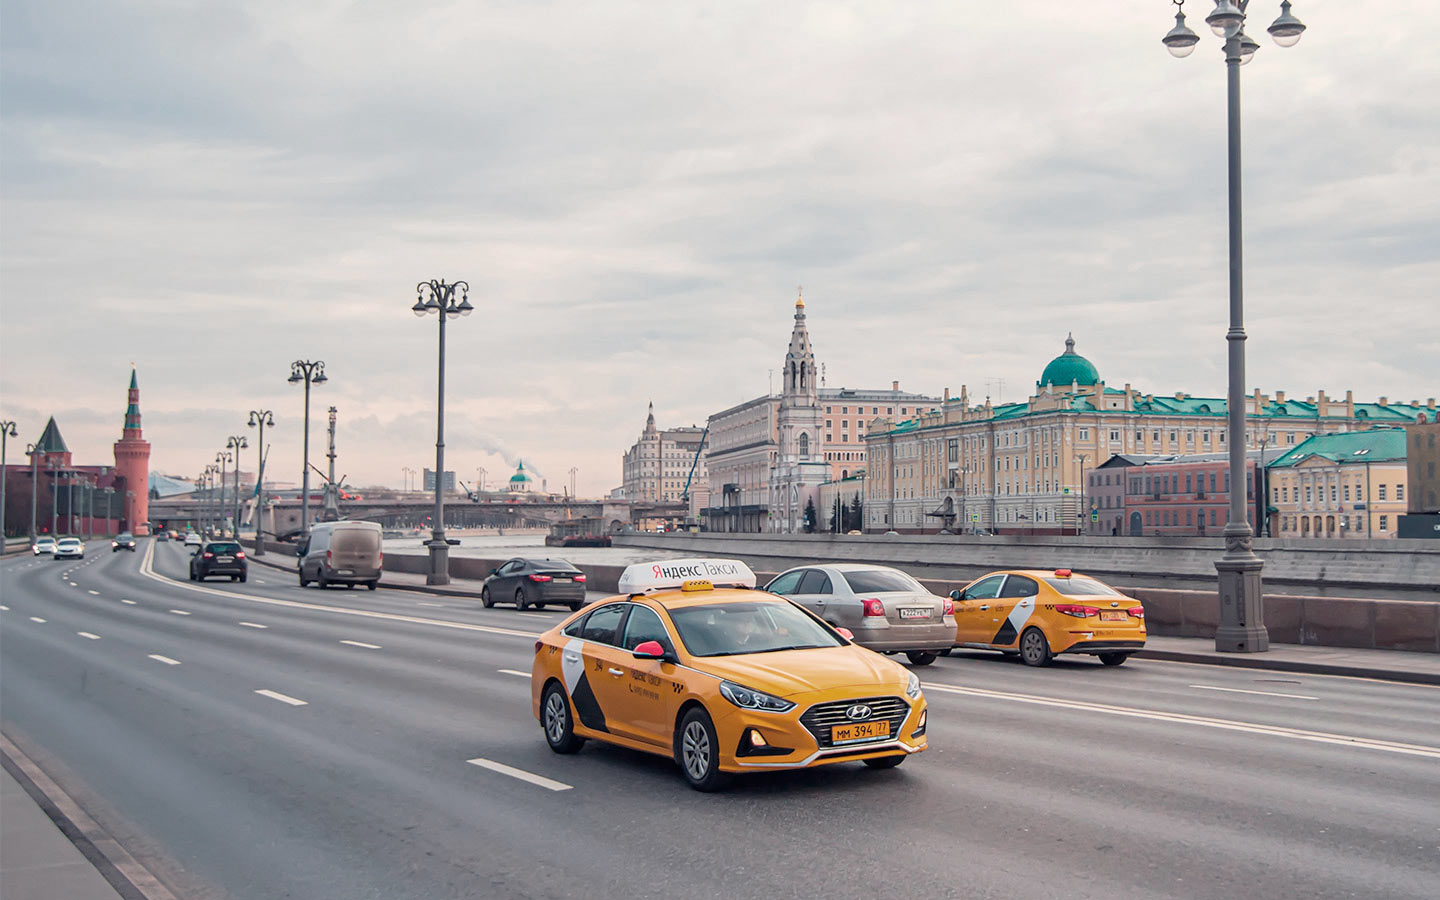 ГИБДД Москвы назвала самые частые нарушения среди таксистов. Антирейтинг